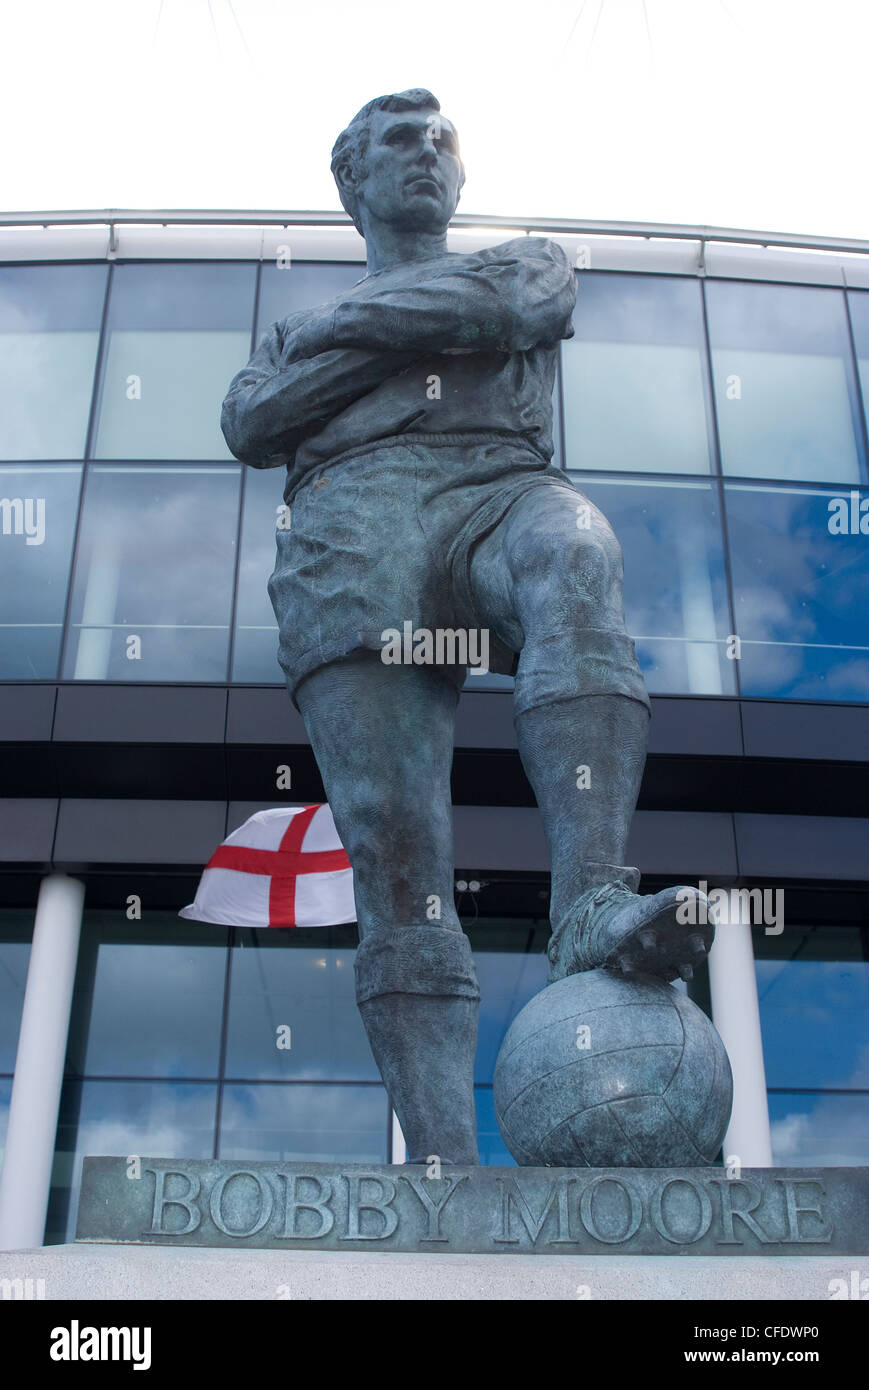 Bobby Moore, Wembley Stadium, Wembley, London, England, United Kingdom, Europe Stock Photo